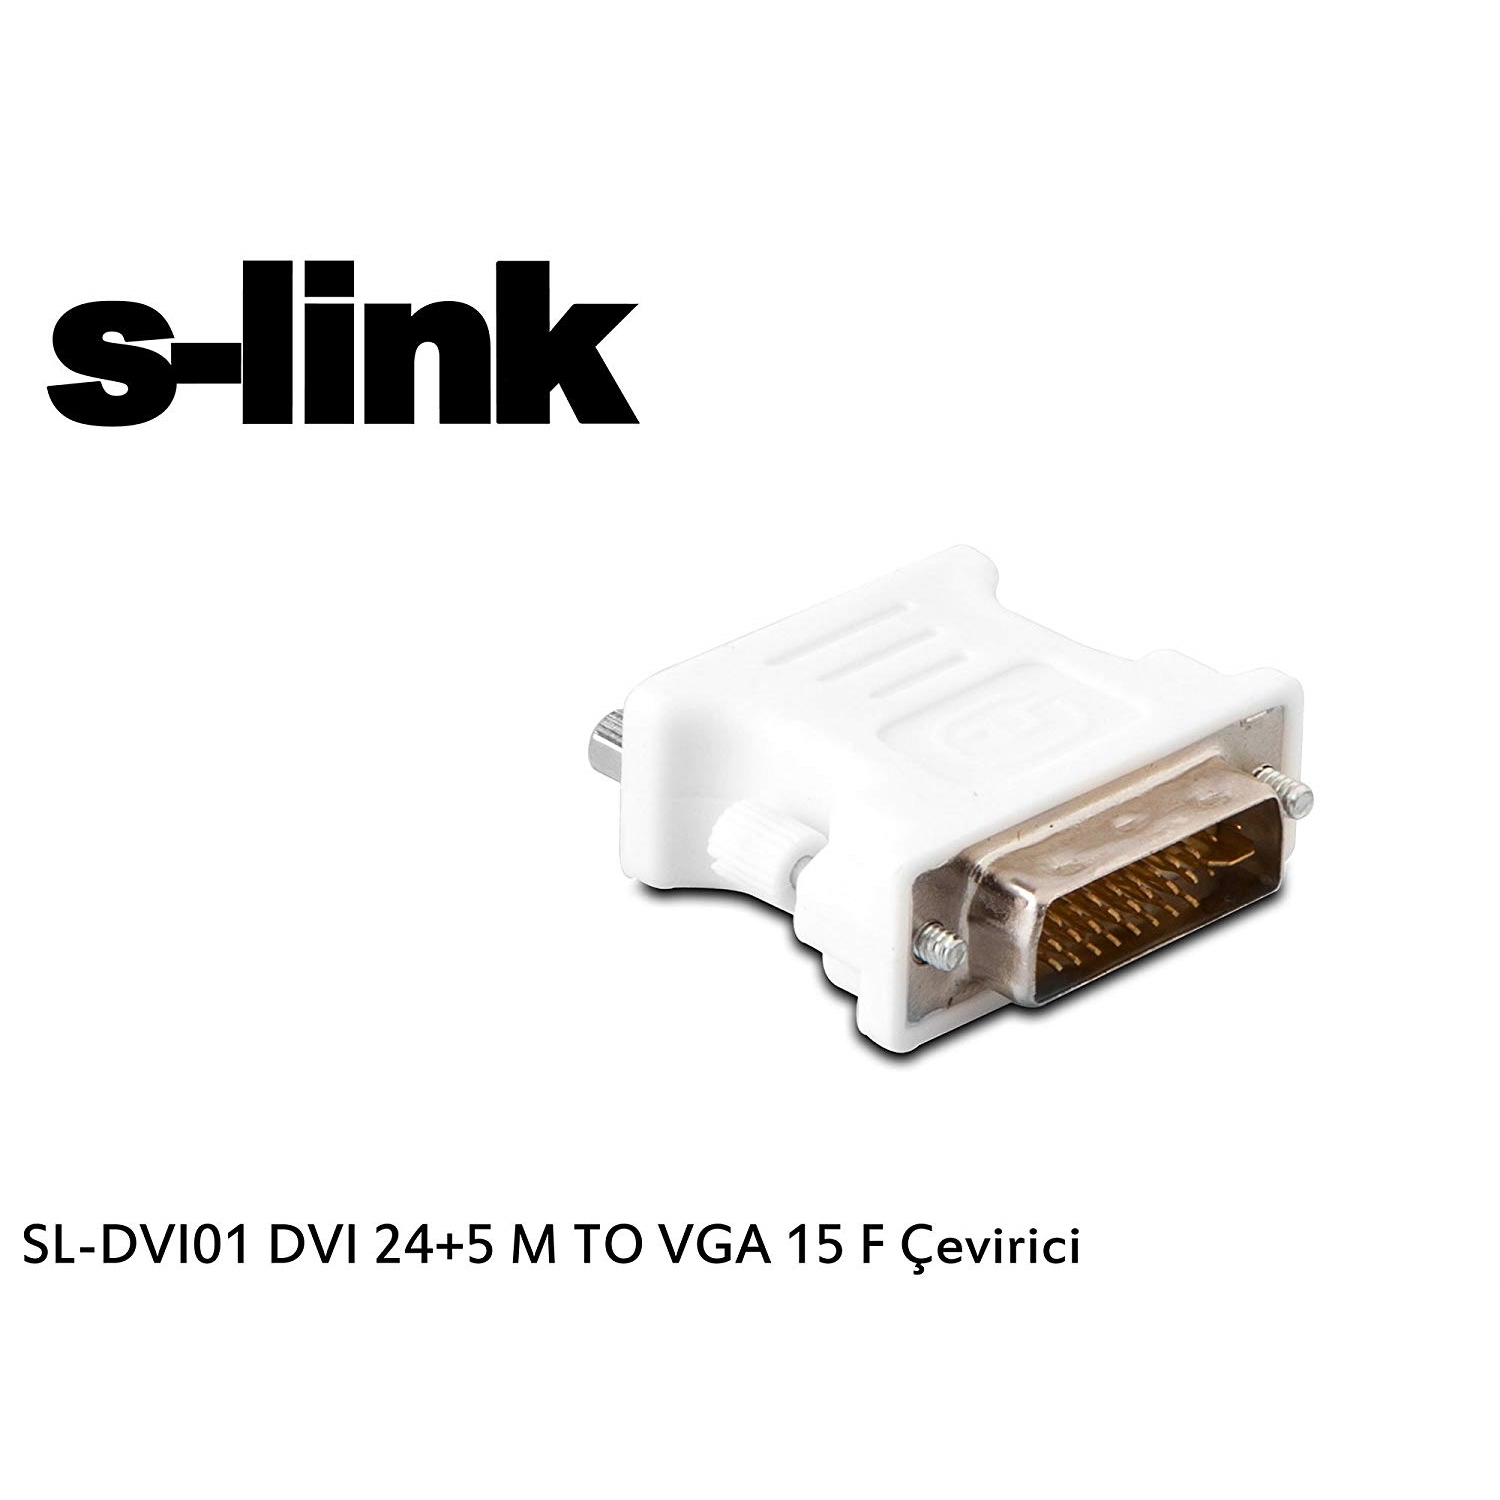 S-LINK SL-DVI01 DVI TO VGA 24+5F ÇEVİRİCİ